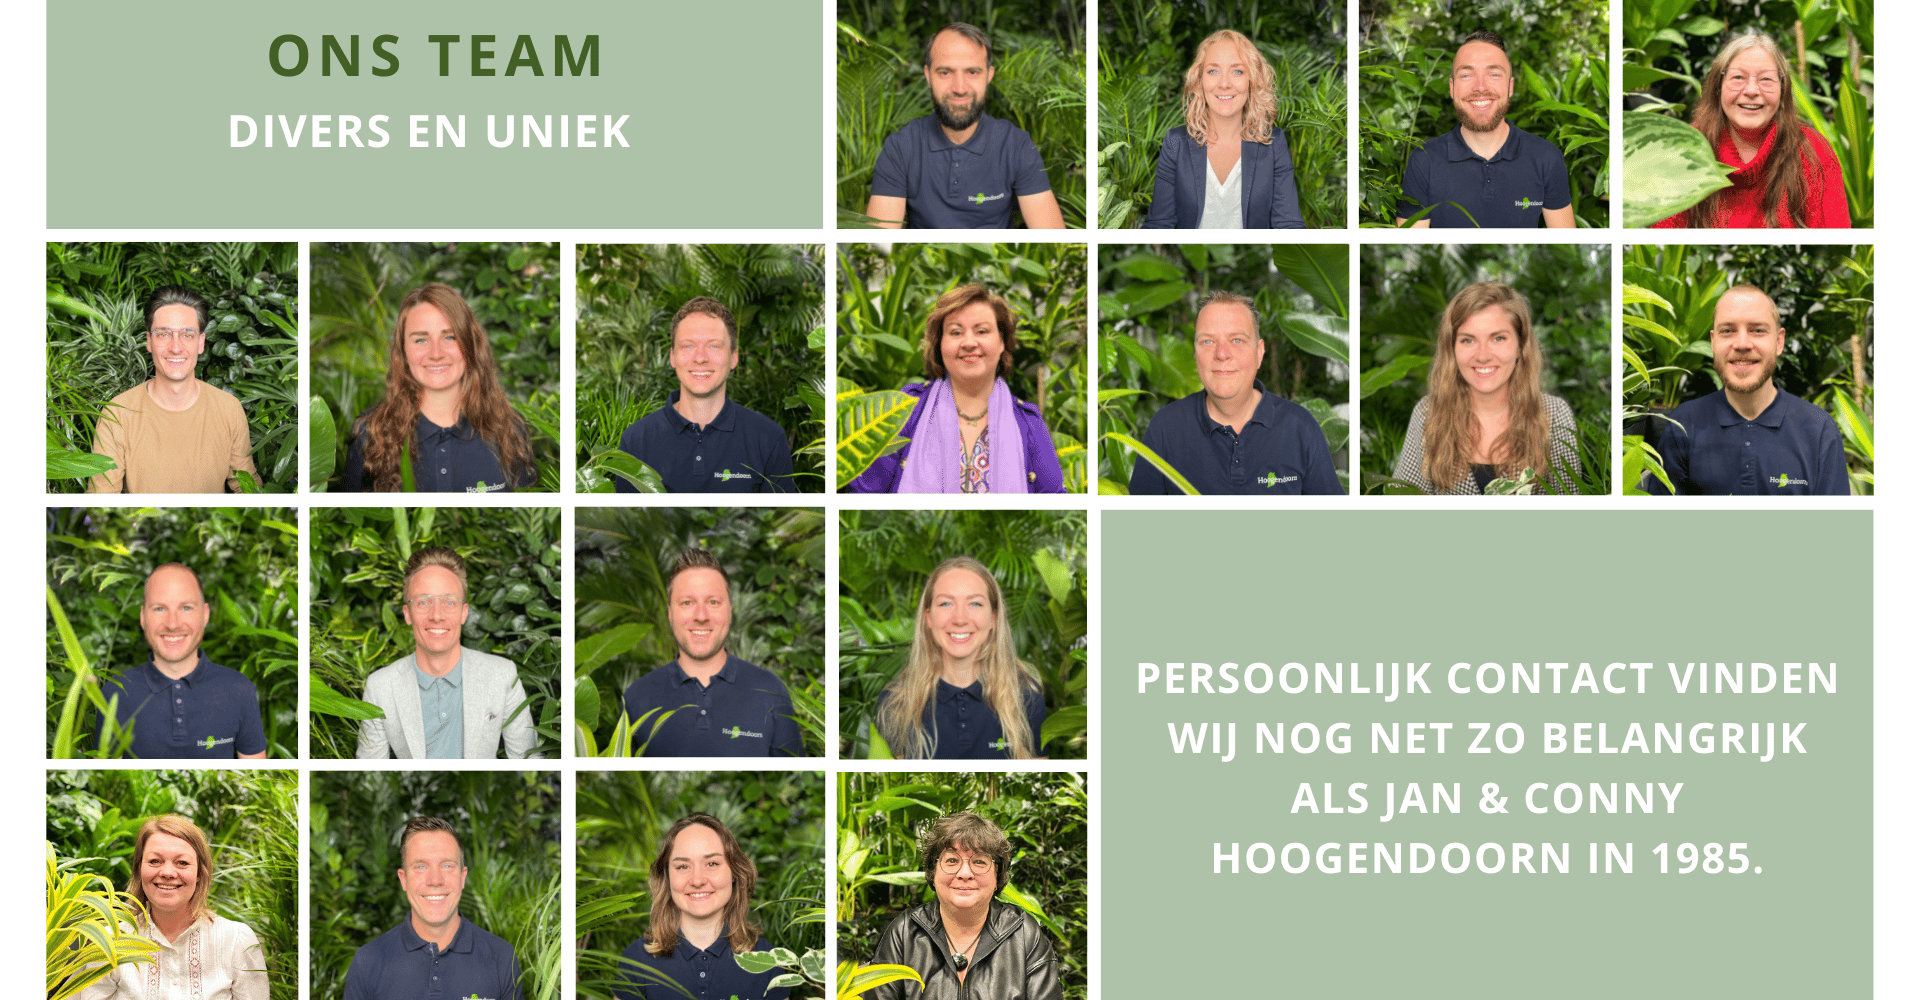 Hoogendoorn ons team - website